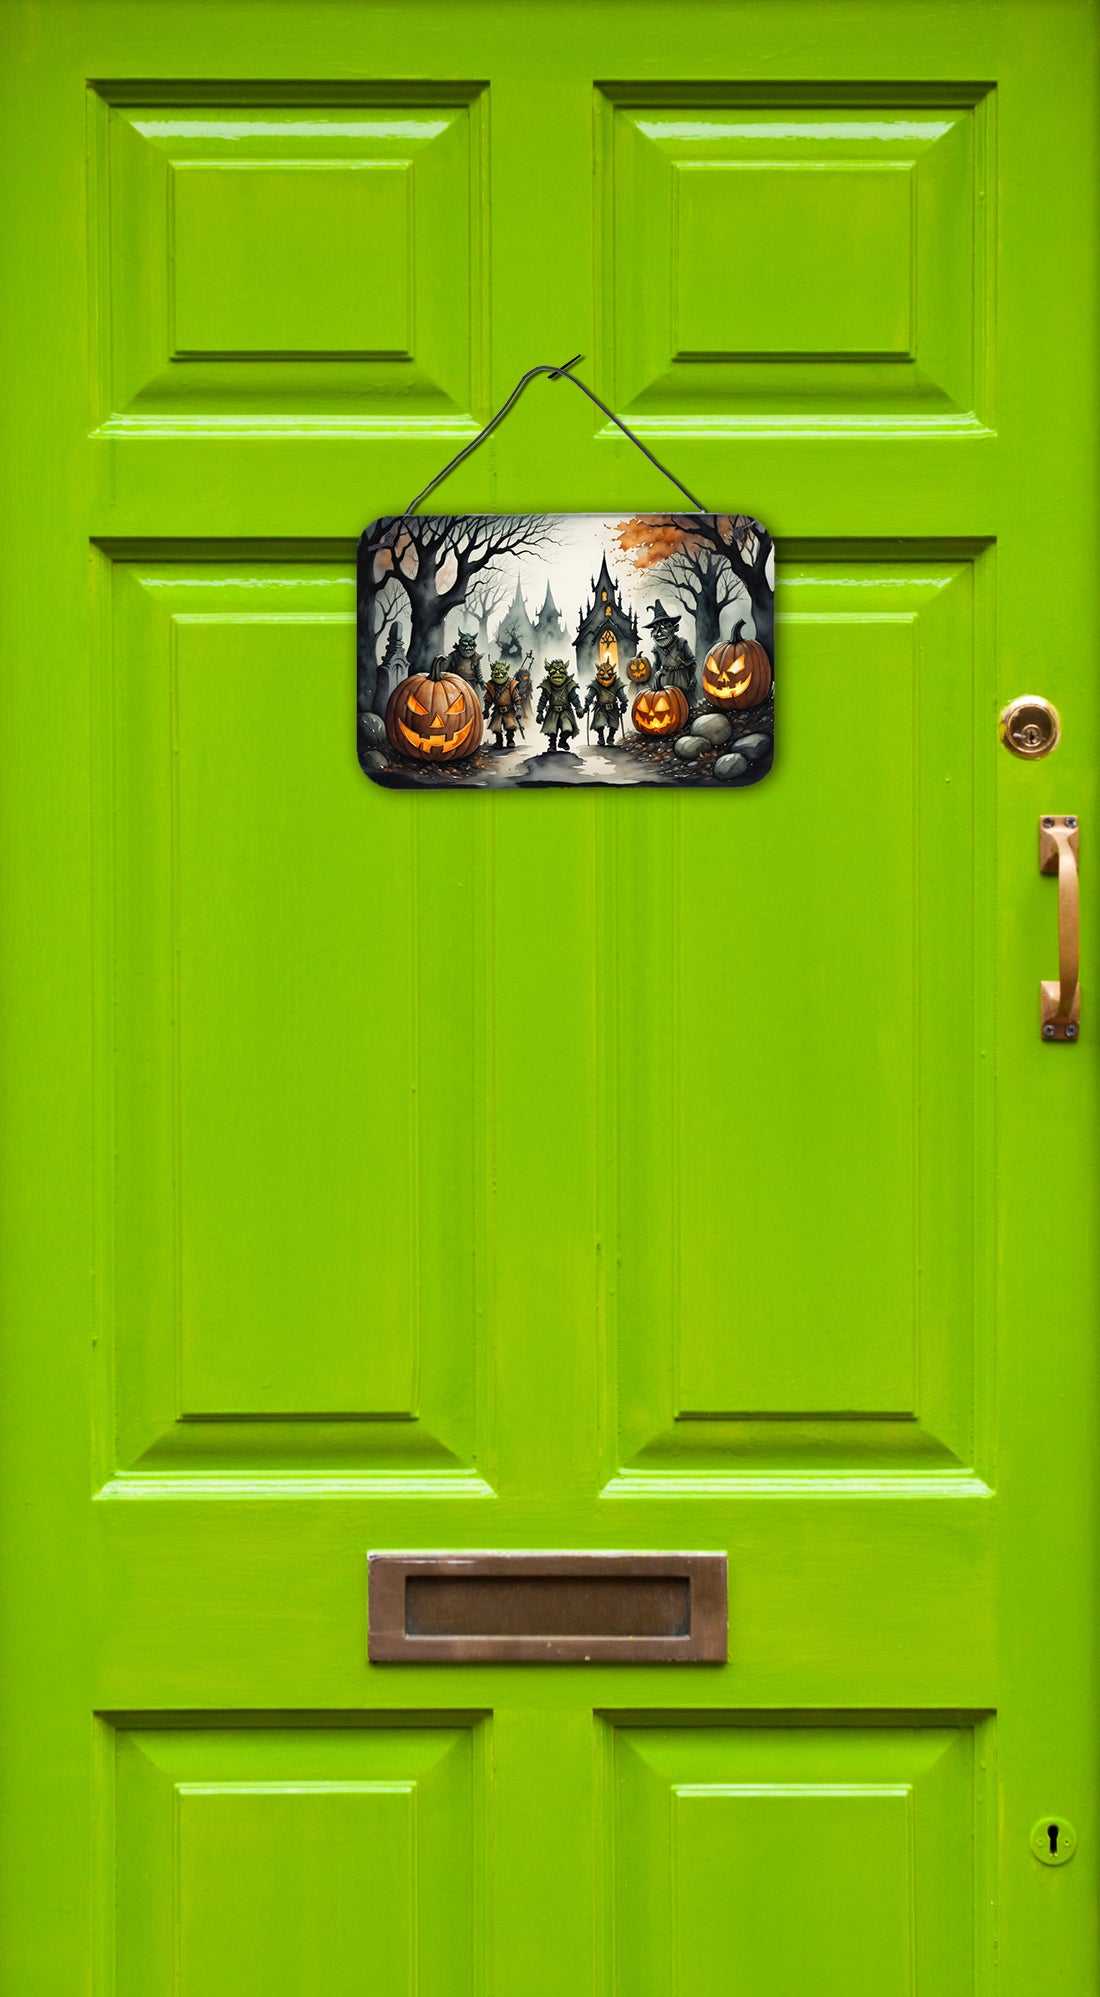 Buy this Orcs Spooky Halloween Wall or Door Hanging Prints